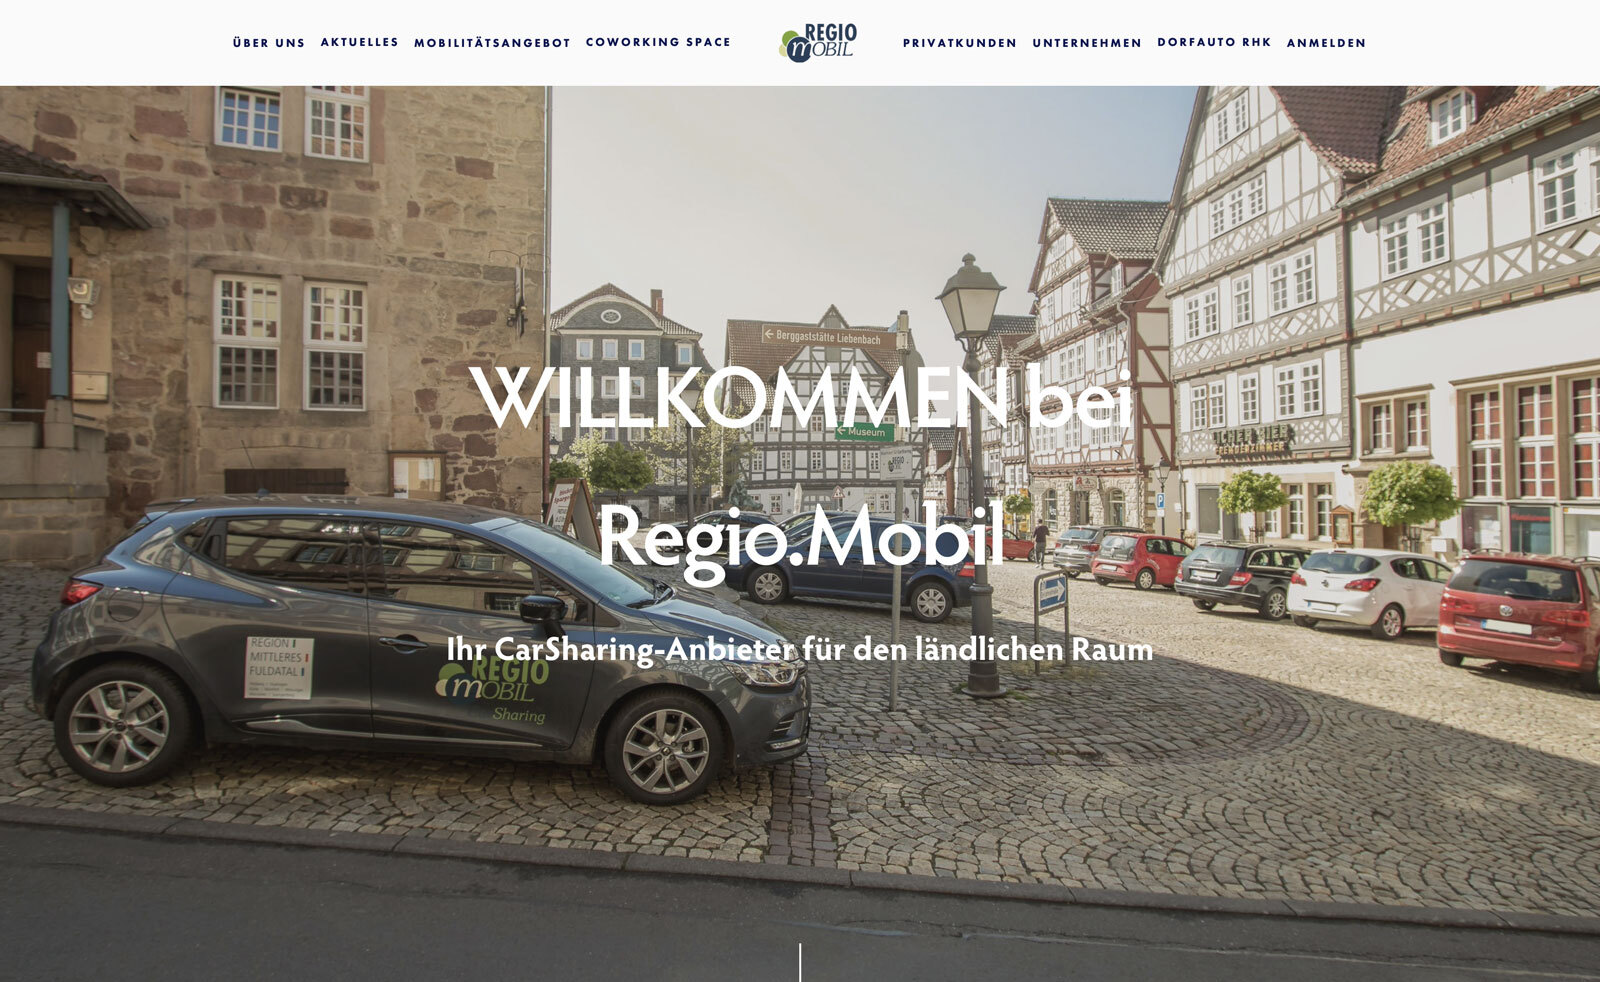 Dorf Welferode startete CarSharing-Projekt mit Regio.Mobil